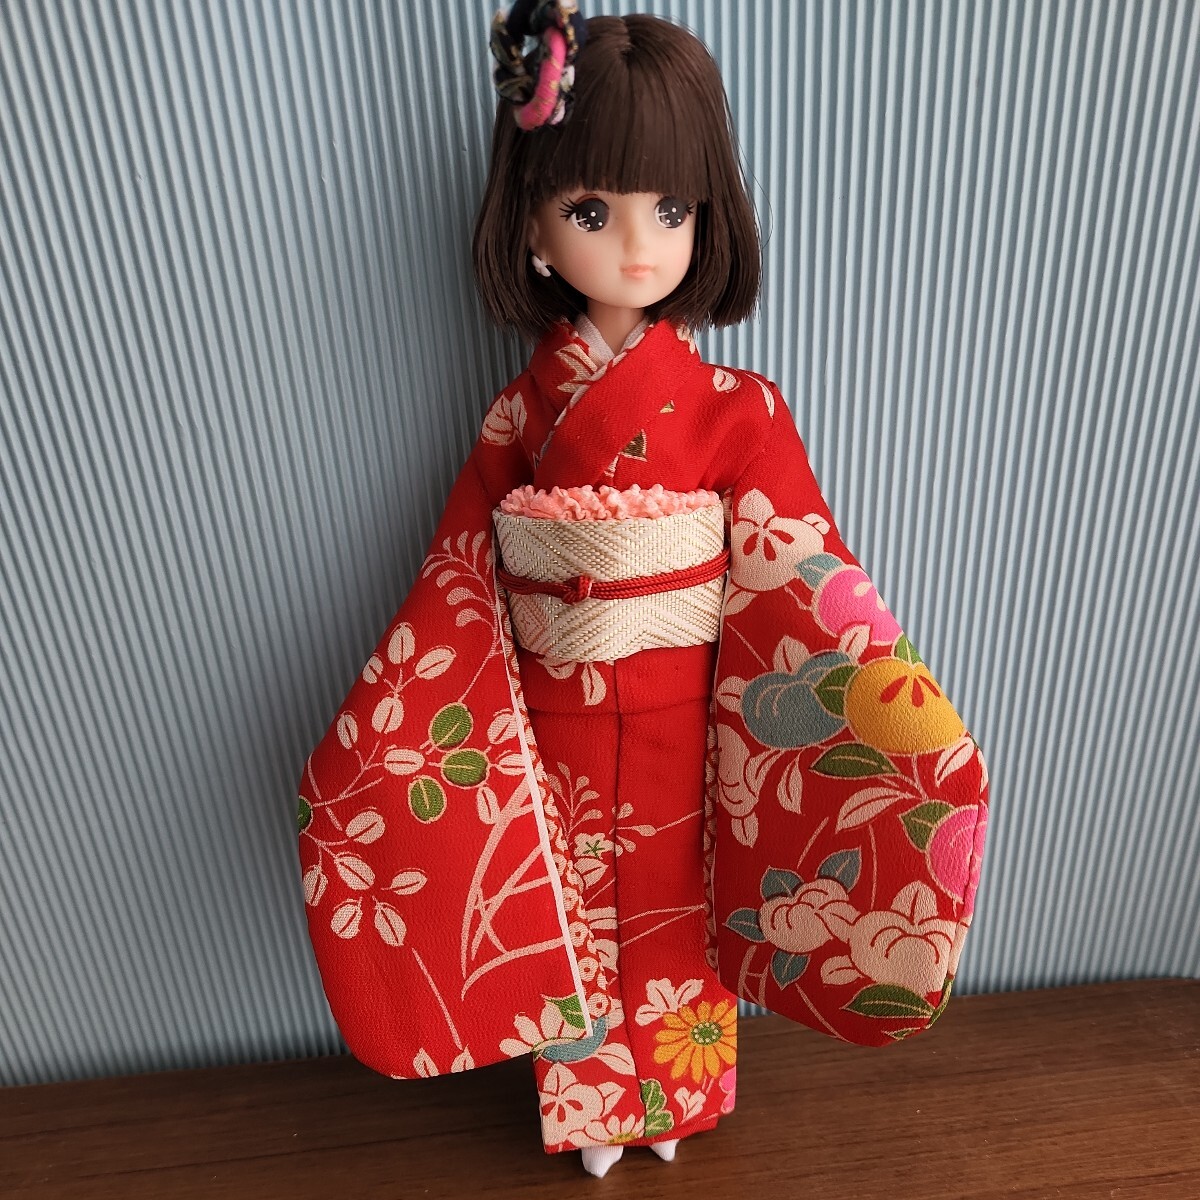 ◆リカちゃんの正絹お着物、赤色に花、handmade 、可愛い◆の画像2